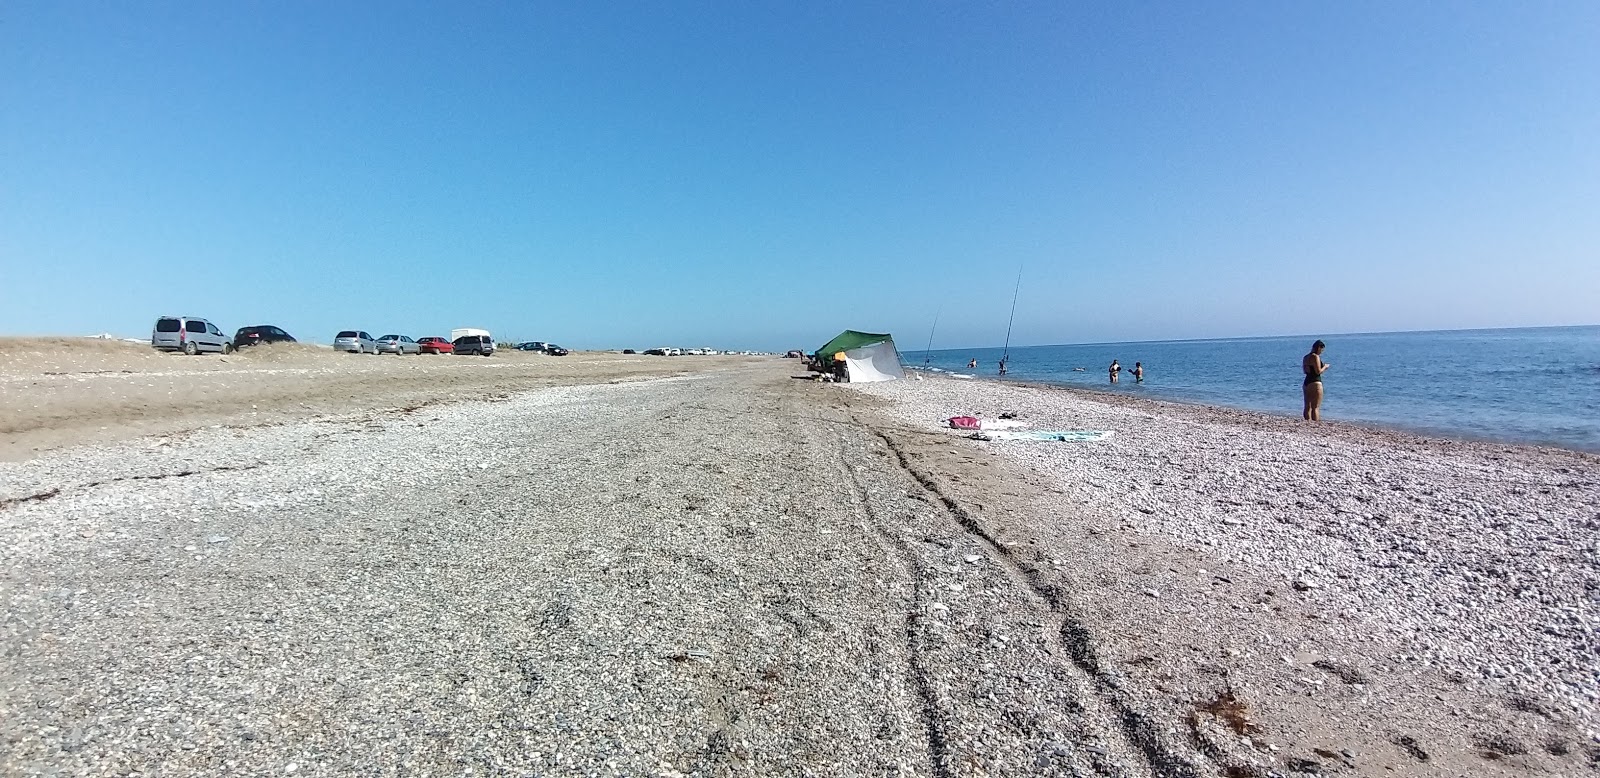 Playa Balerma的照片 具有部分干净级别的清洁度